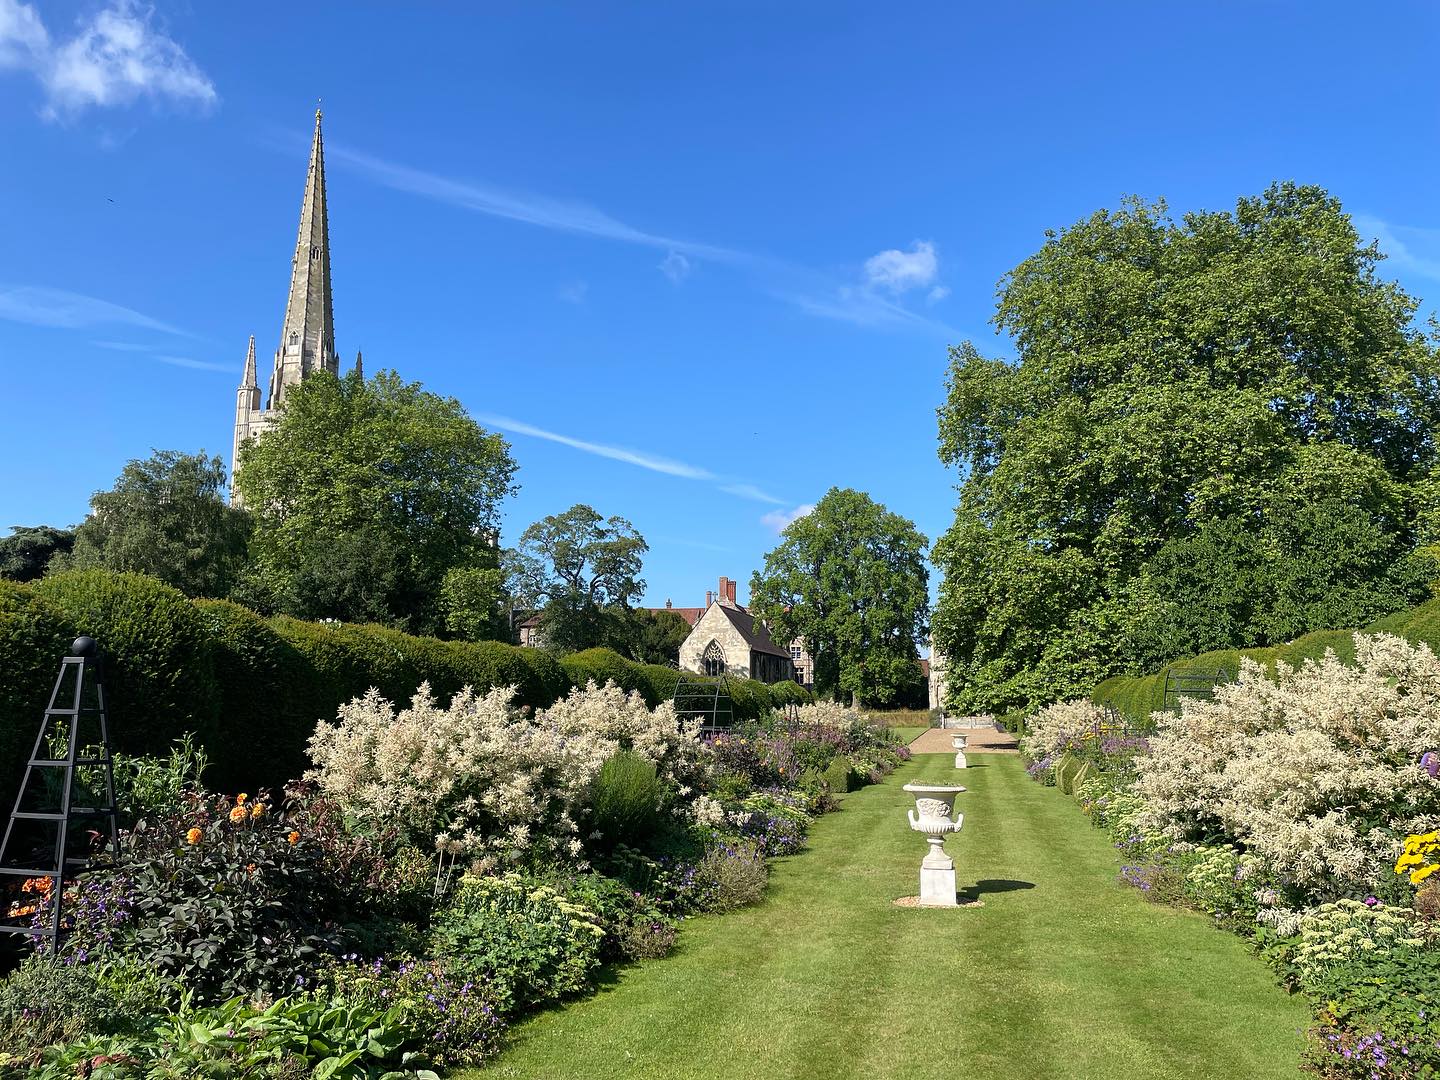 The Bishop of Norwich's Garden